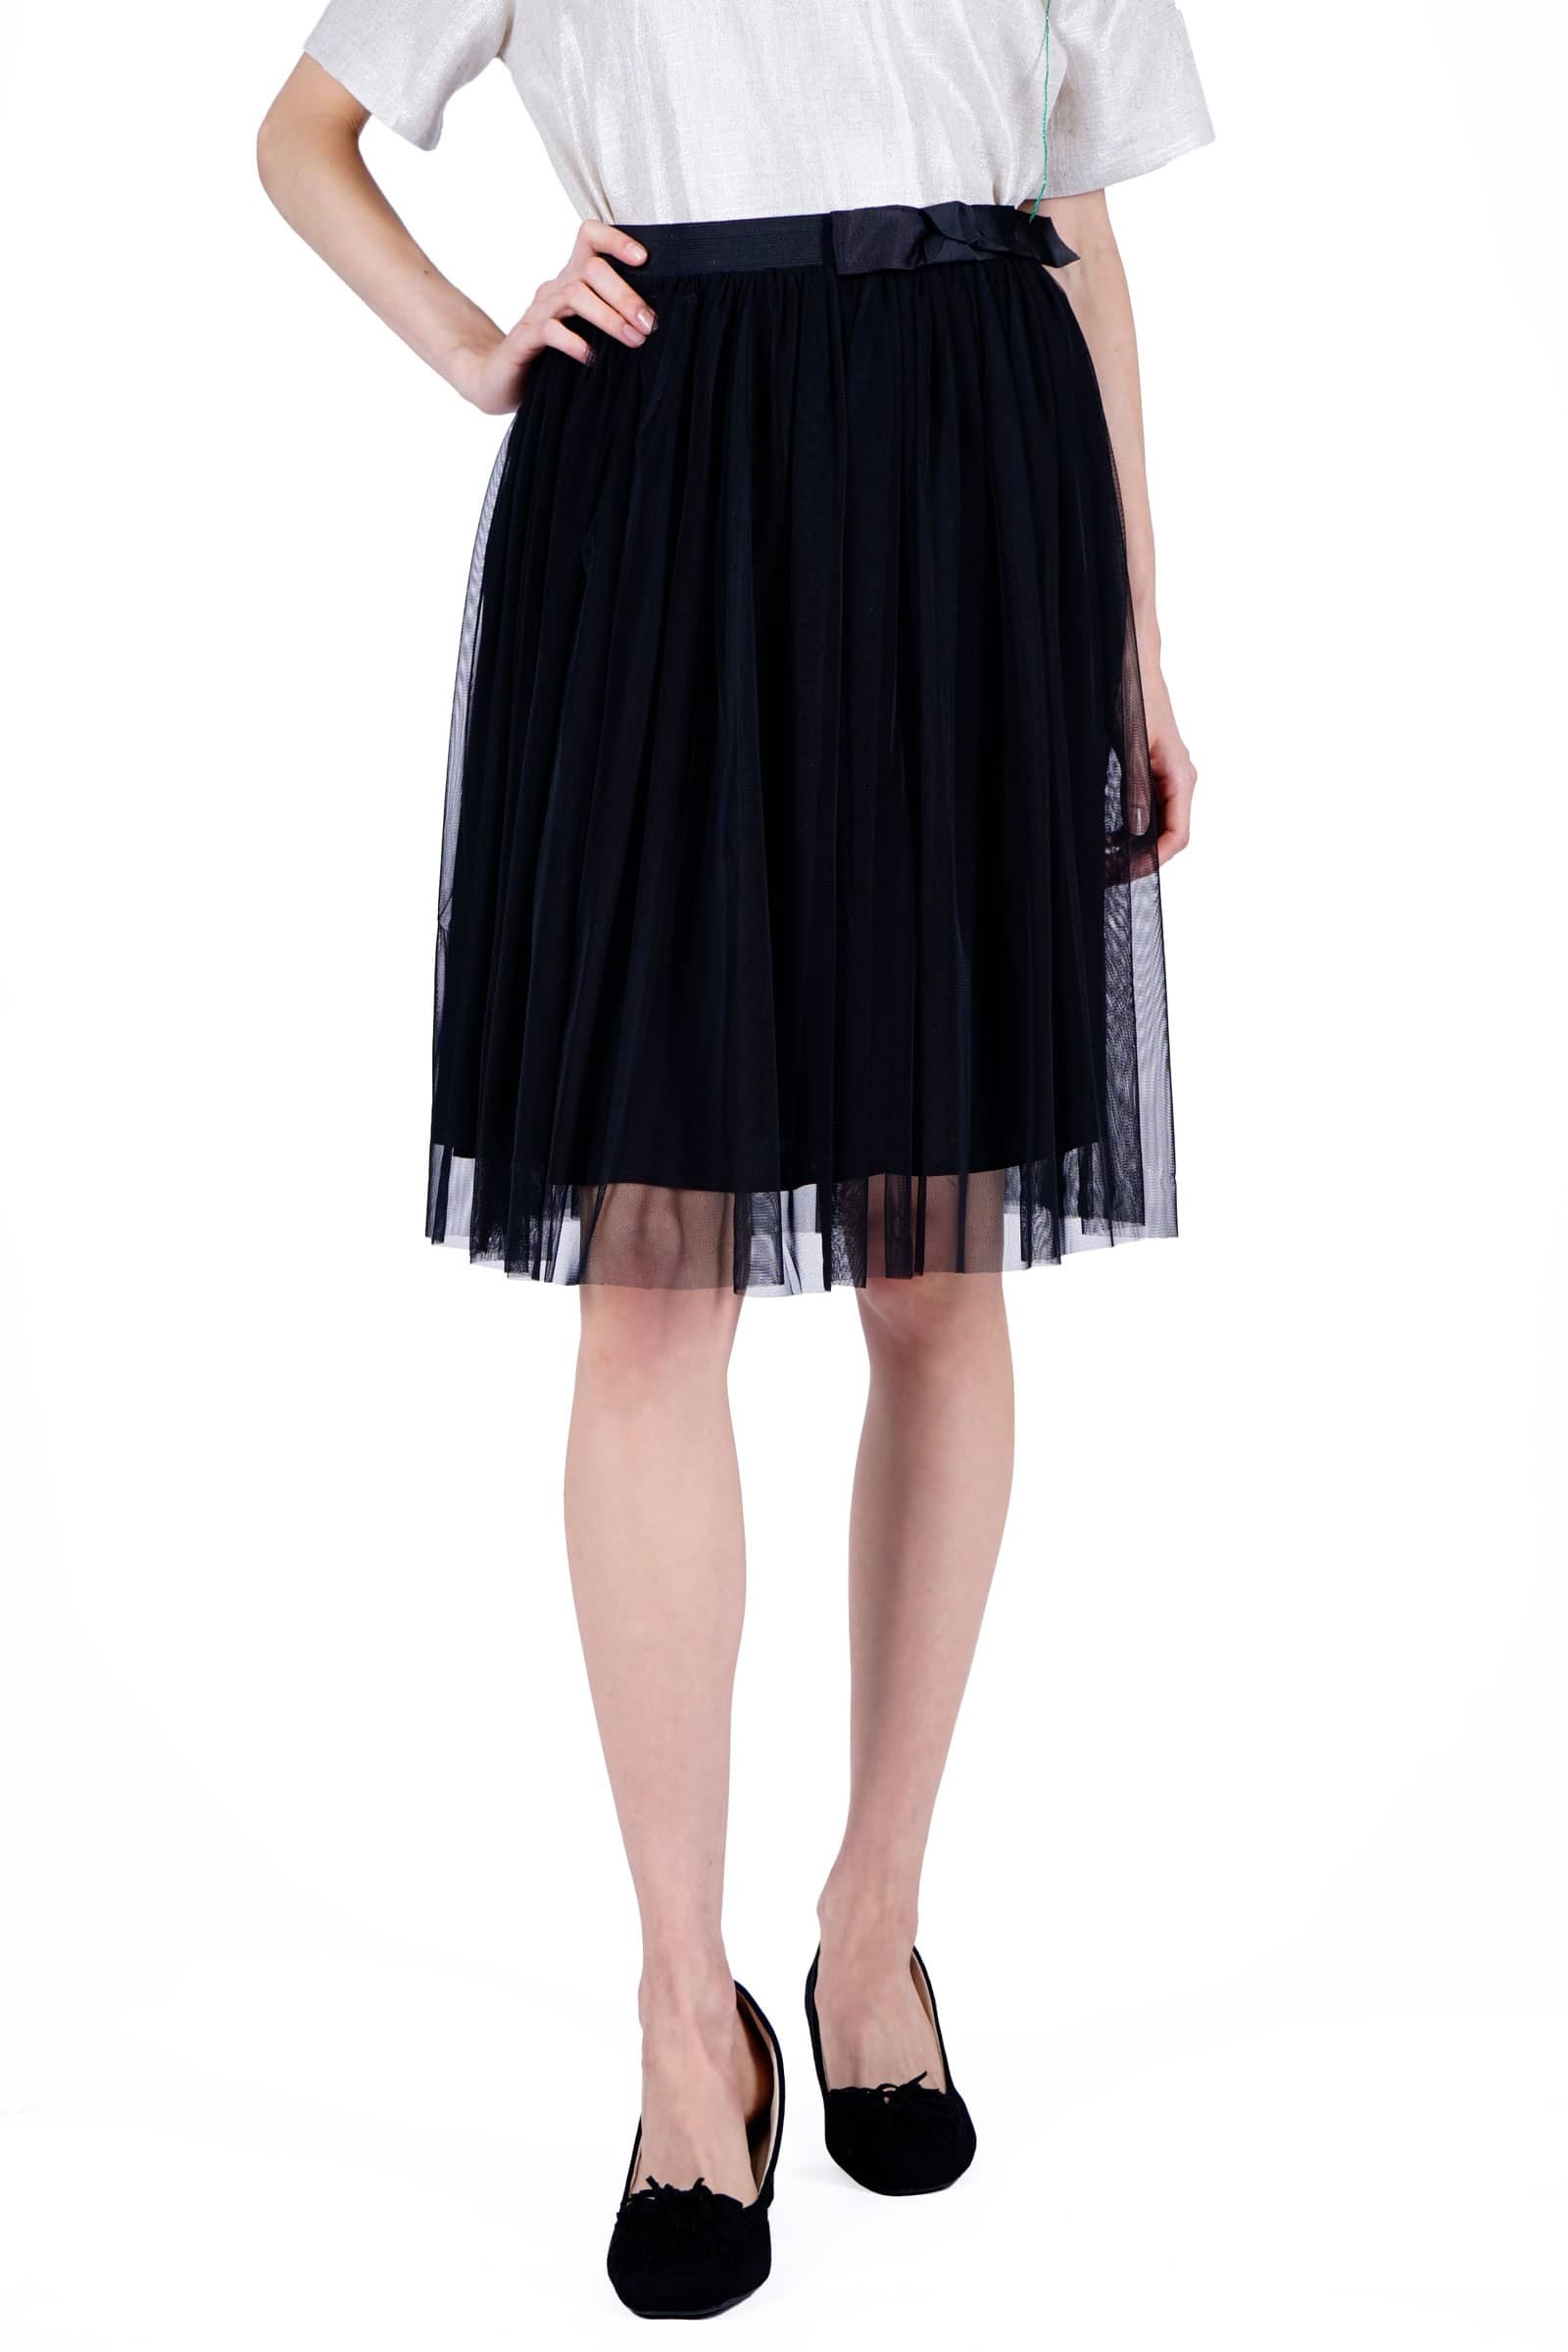 Short black tulle skirt